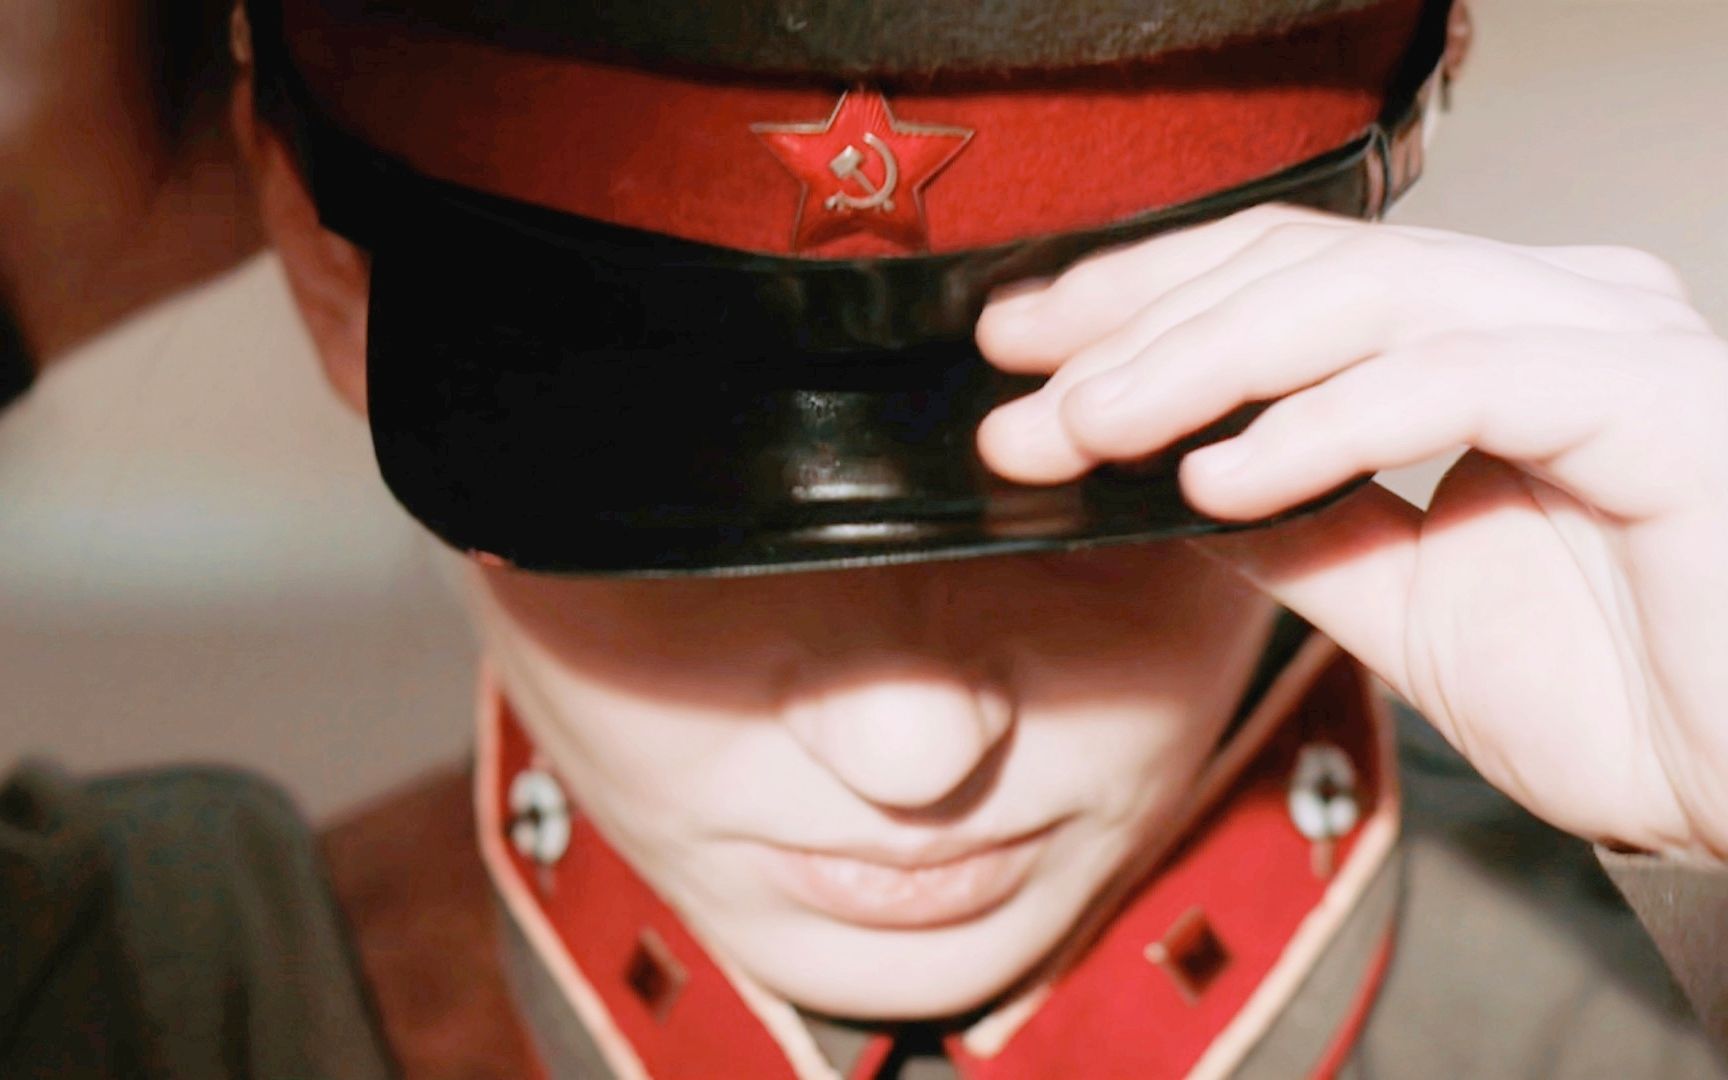 People 1728x1080 USSR soldier communism uniform hat Soviet Army